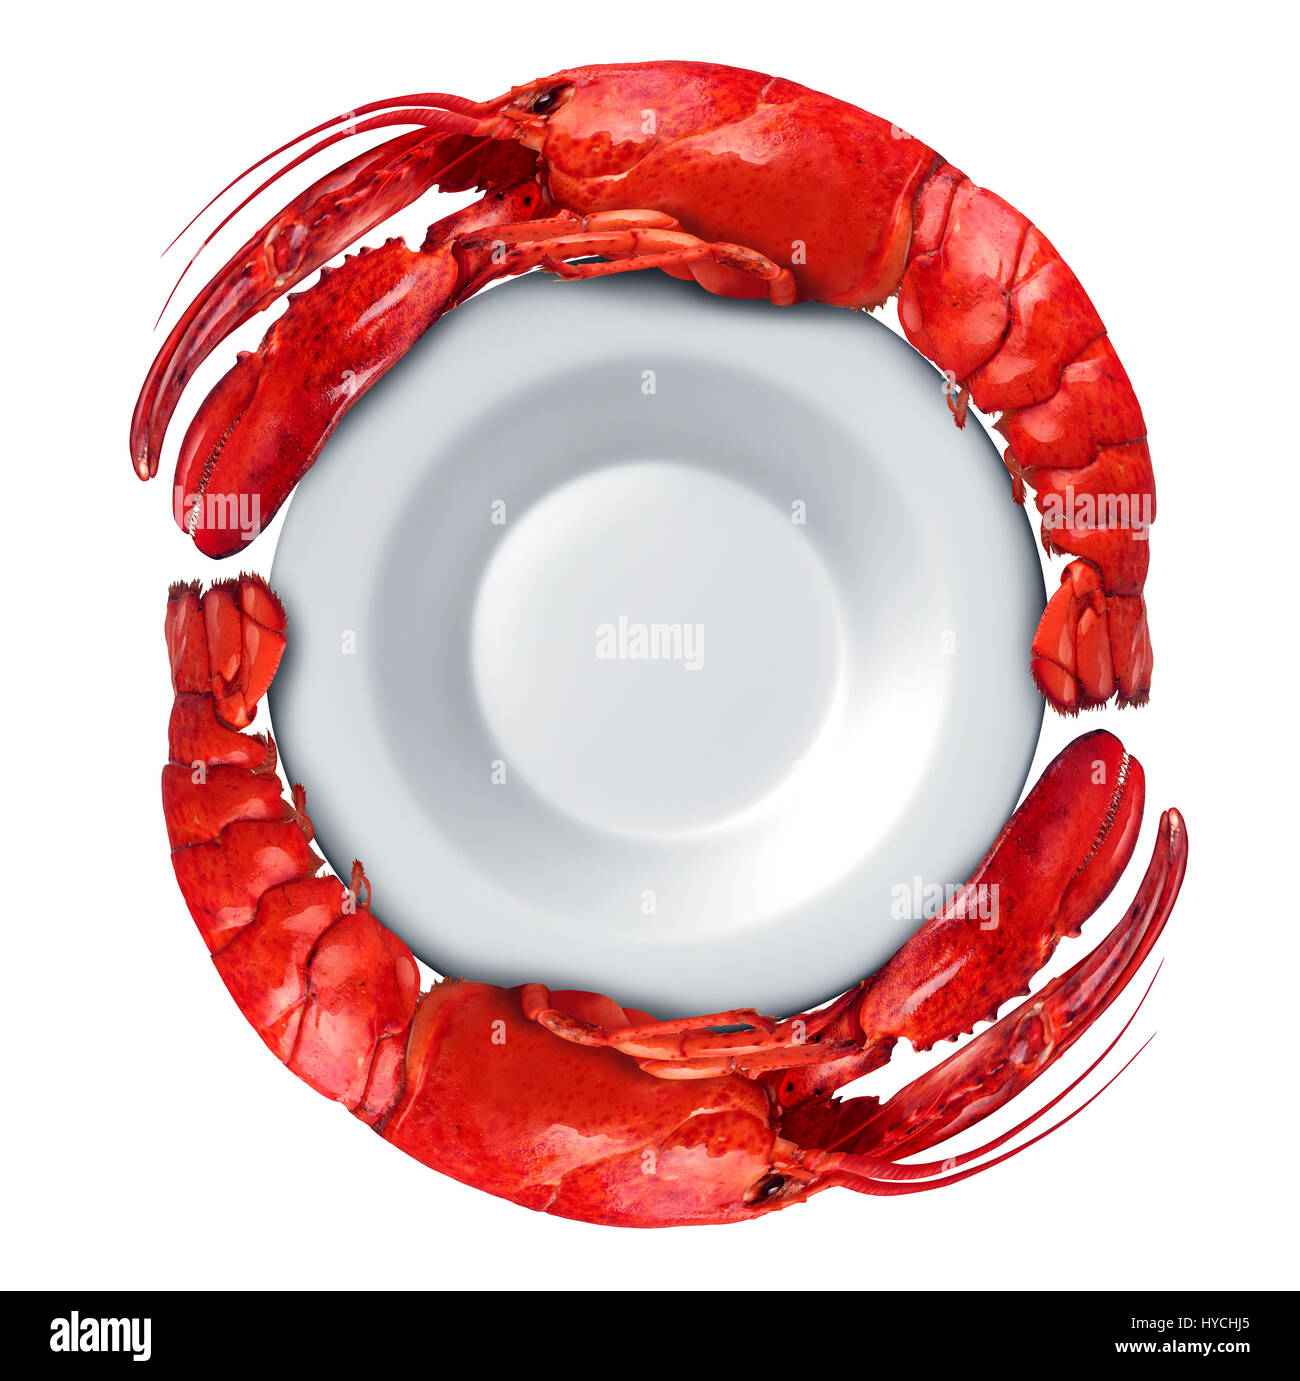 Piatto a base di aragosta con le Aragoste sagomato a cerchio attorno ad una piastra vuota isolata su uno sfondo bianco come piatti a base di frutti di mare freschi o crostacei cibo. Foto Stock